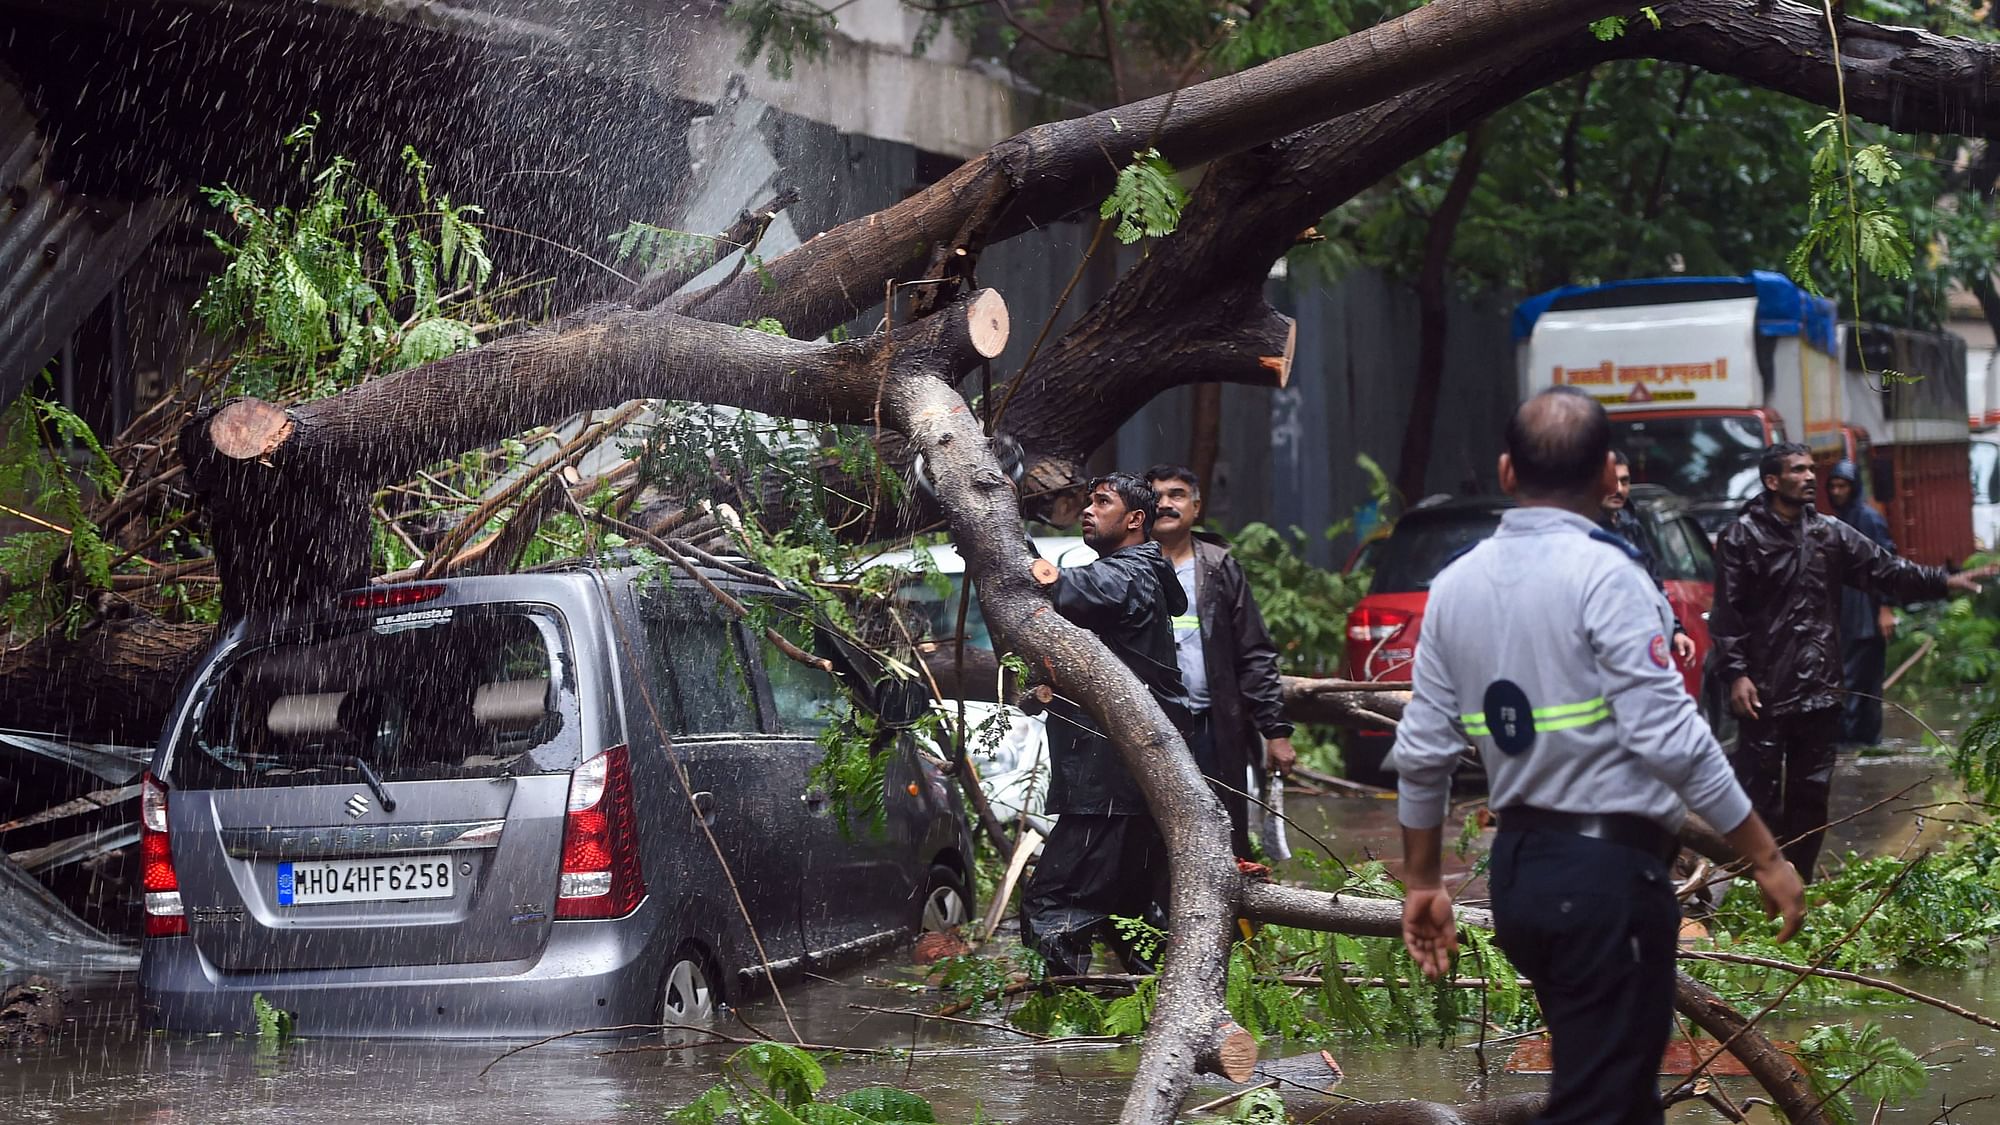 मुंबई के घाटकोपर में भारी मॉनसूनी बारिश की वजह से गिरे पेड़ को काटते अधिकारी